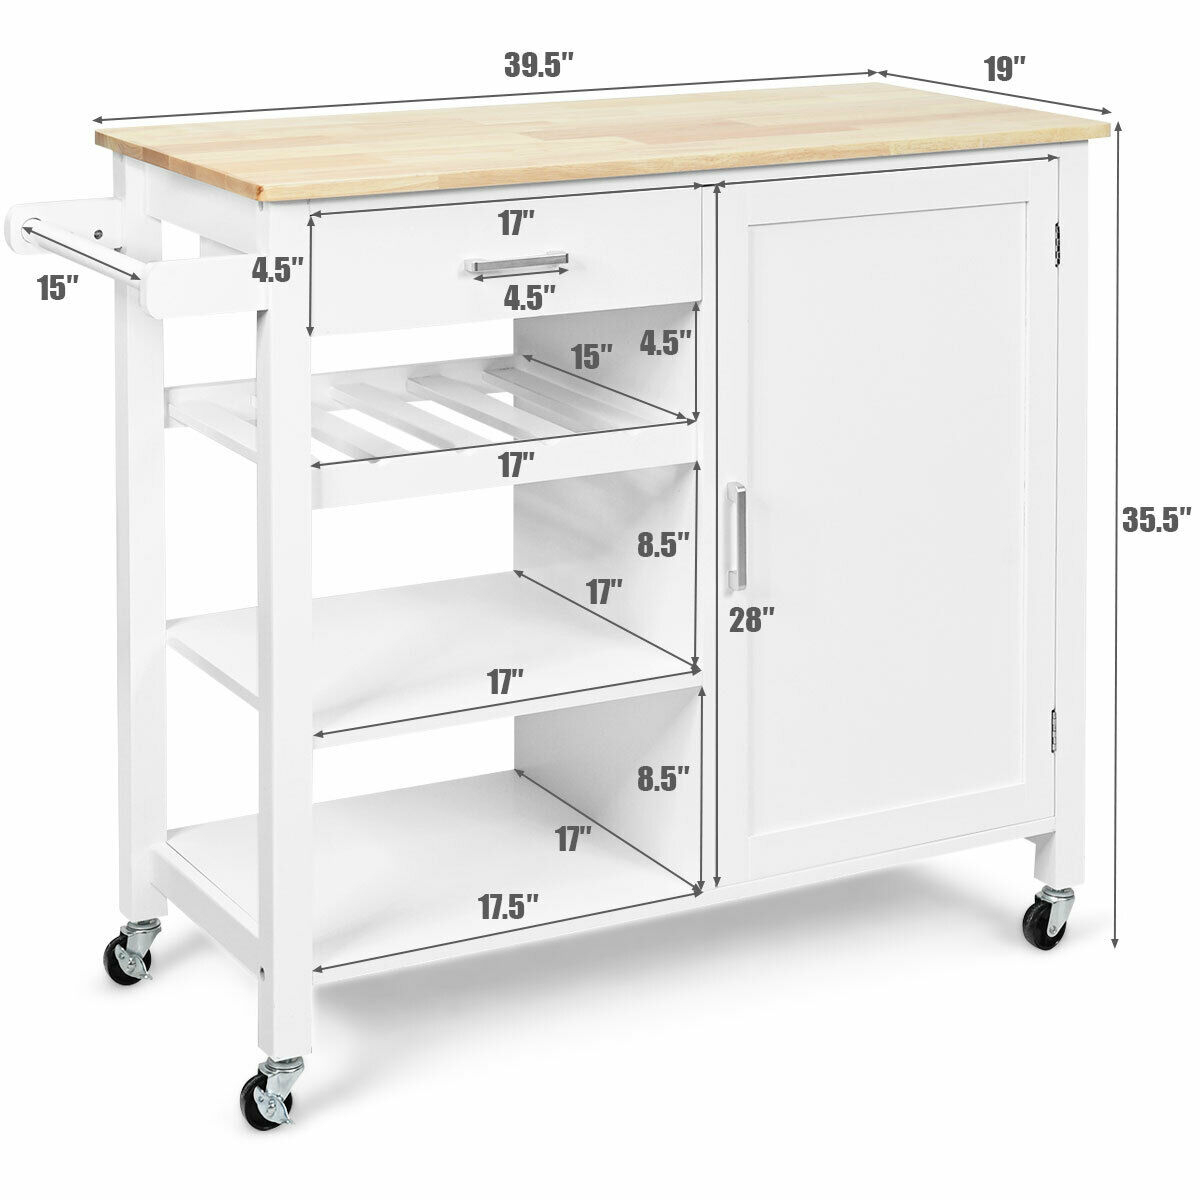 4-Tier Wood Kitchen Island Trolley Cart Storage Cabinet W/ Wine Rack White